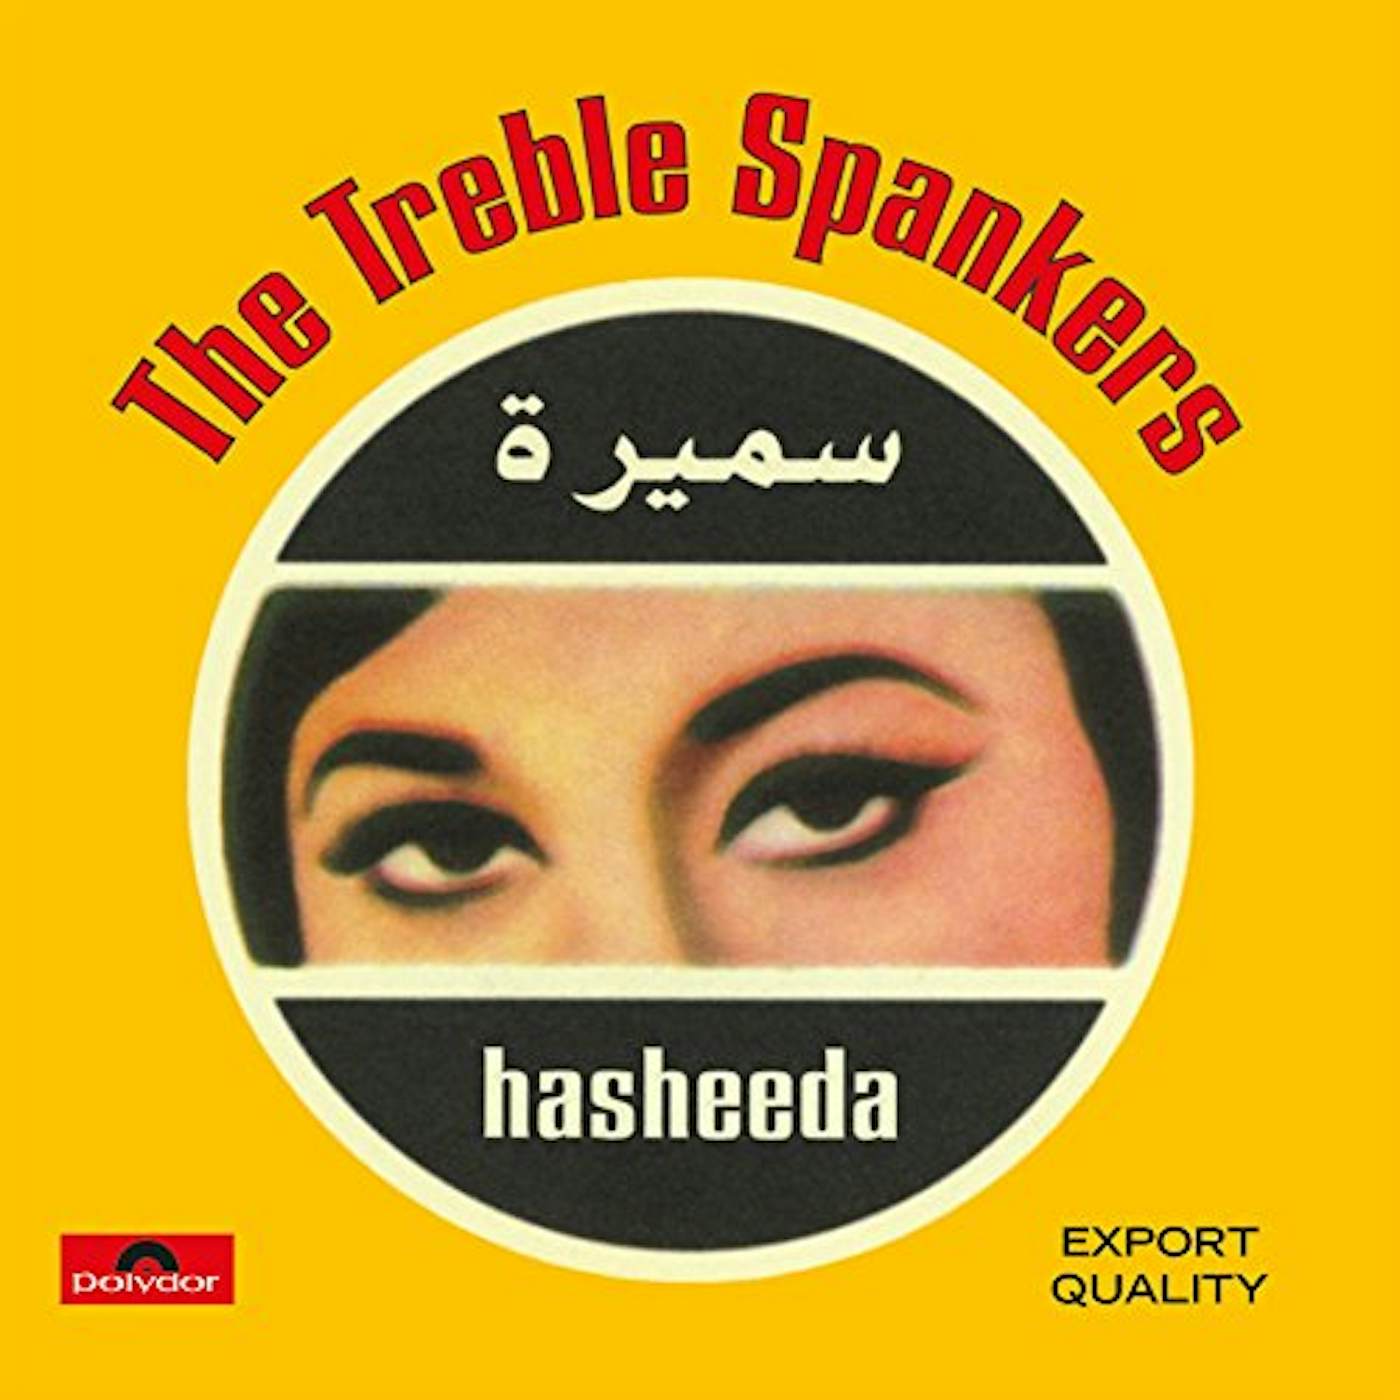 The Treble Spankers Hasheeda Vinyl Record